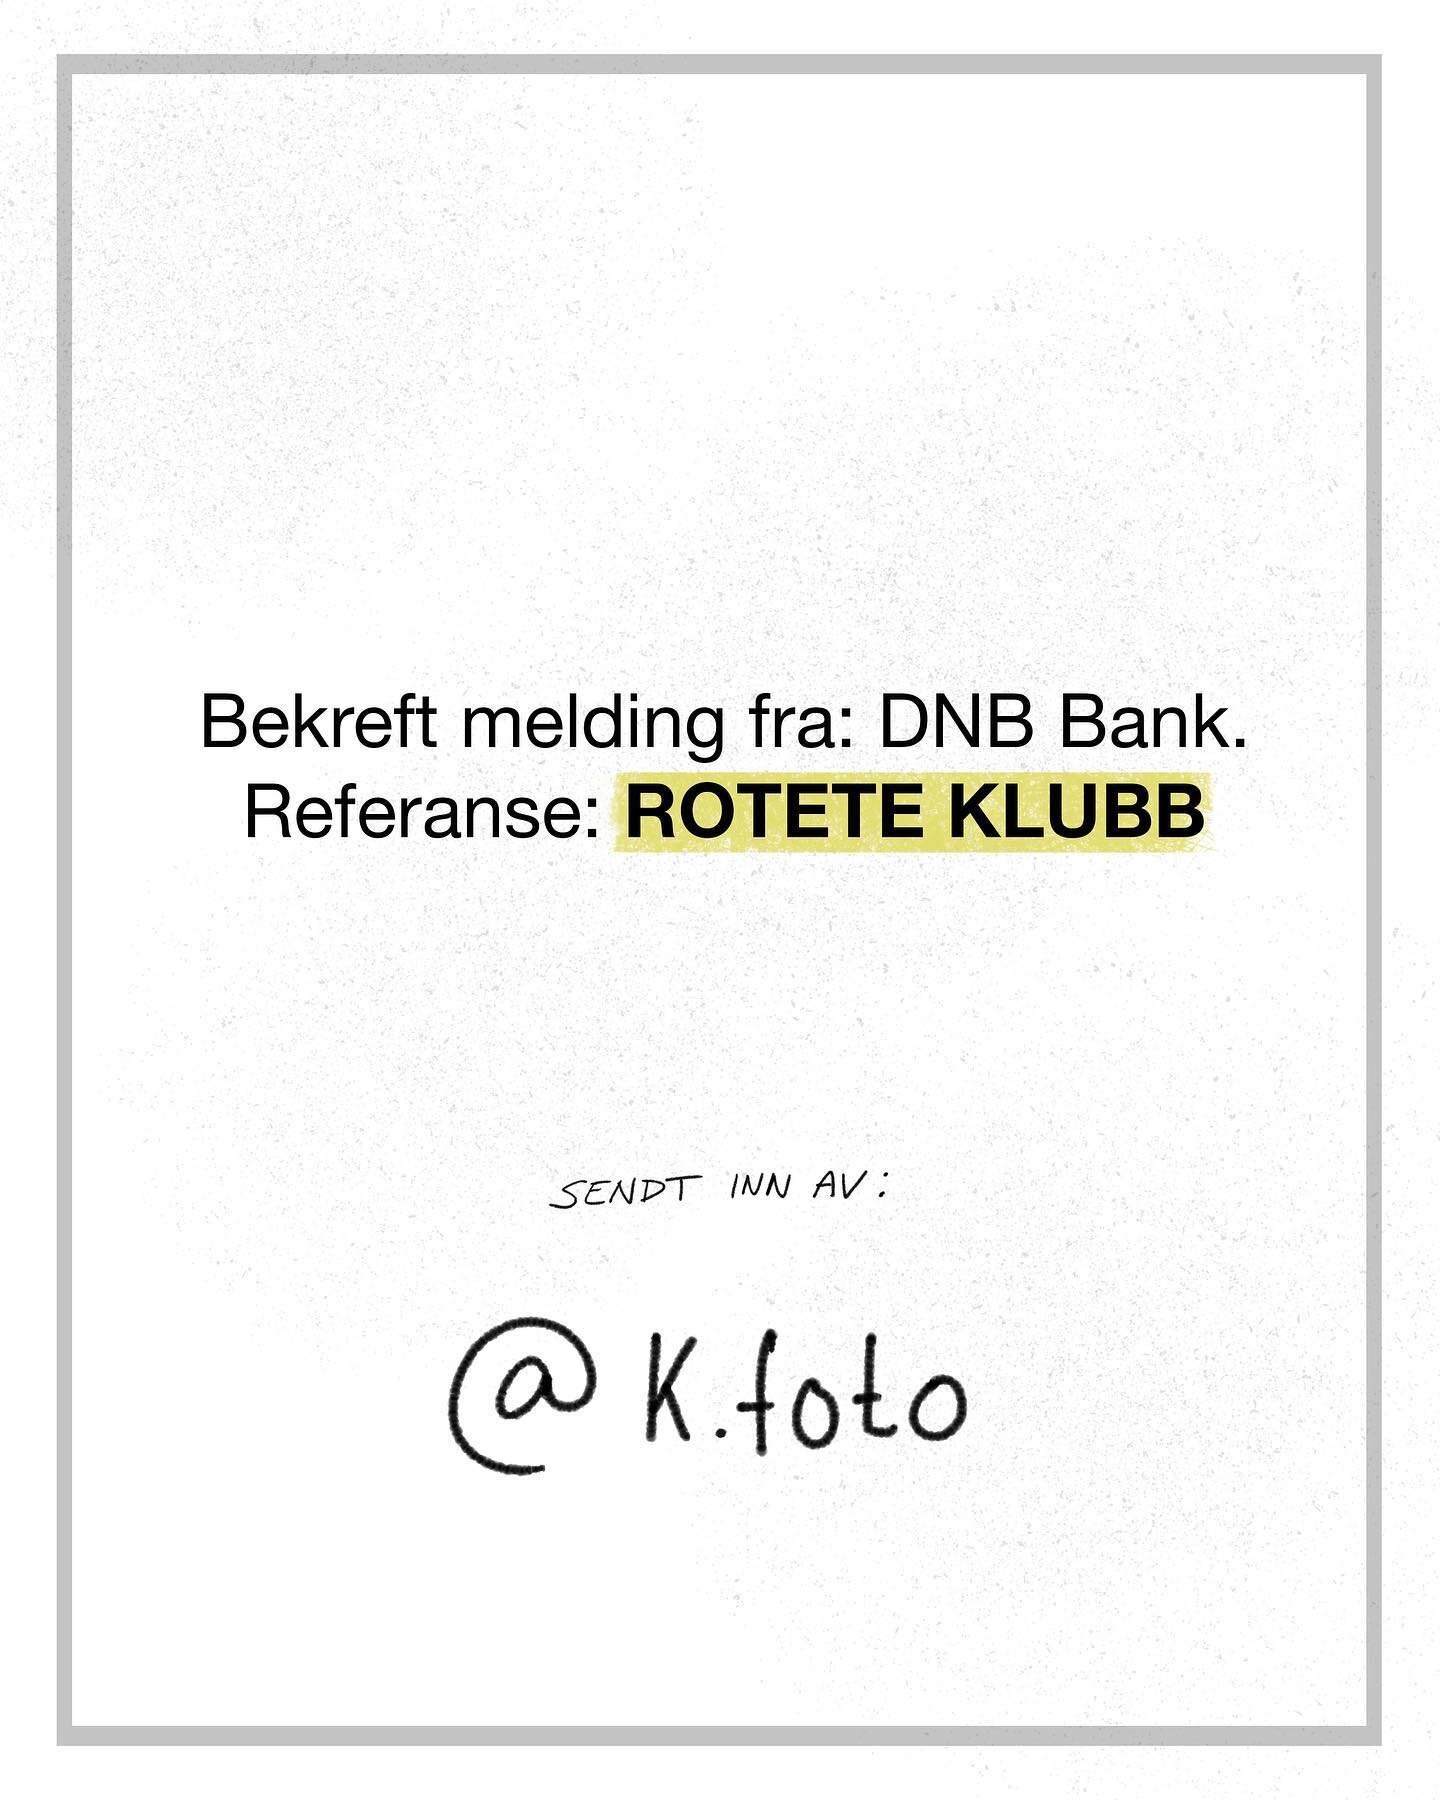 ROTETE KLUBB

&bull;
&bull;
&bull;
&bull;
&bull;
&bull;
&bull;
#sketch #illustration #bankpaamobil #tegning #illustrert #humor #photoshop #bank #norge #norsk #absurd #norskhumor #klubb #rotete